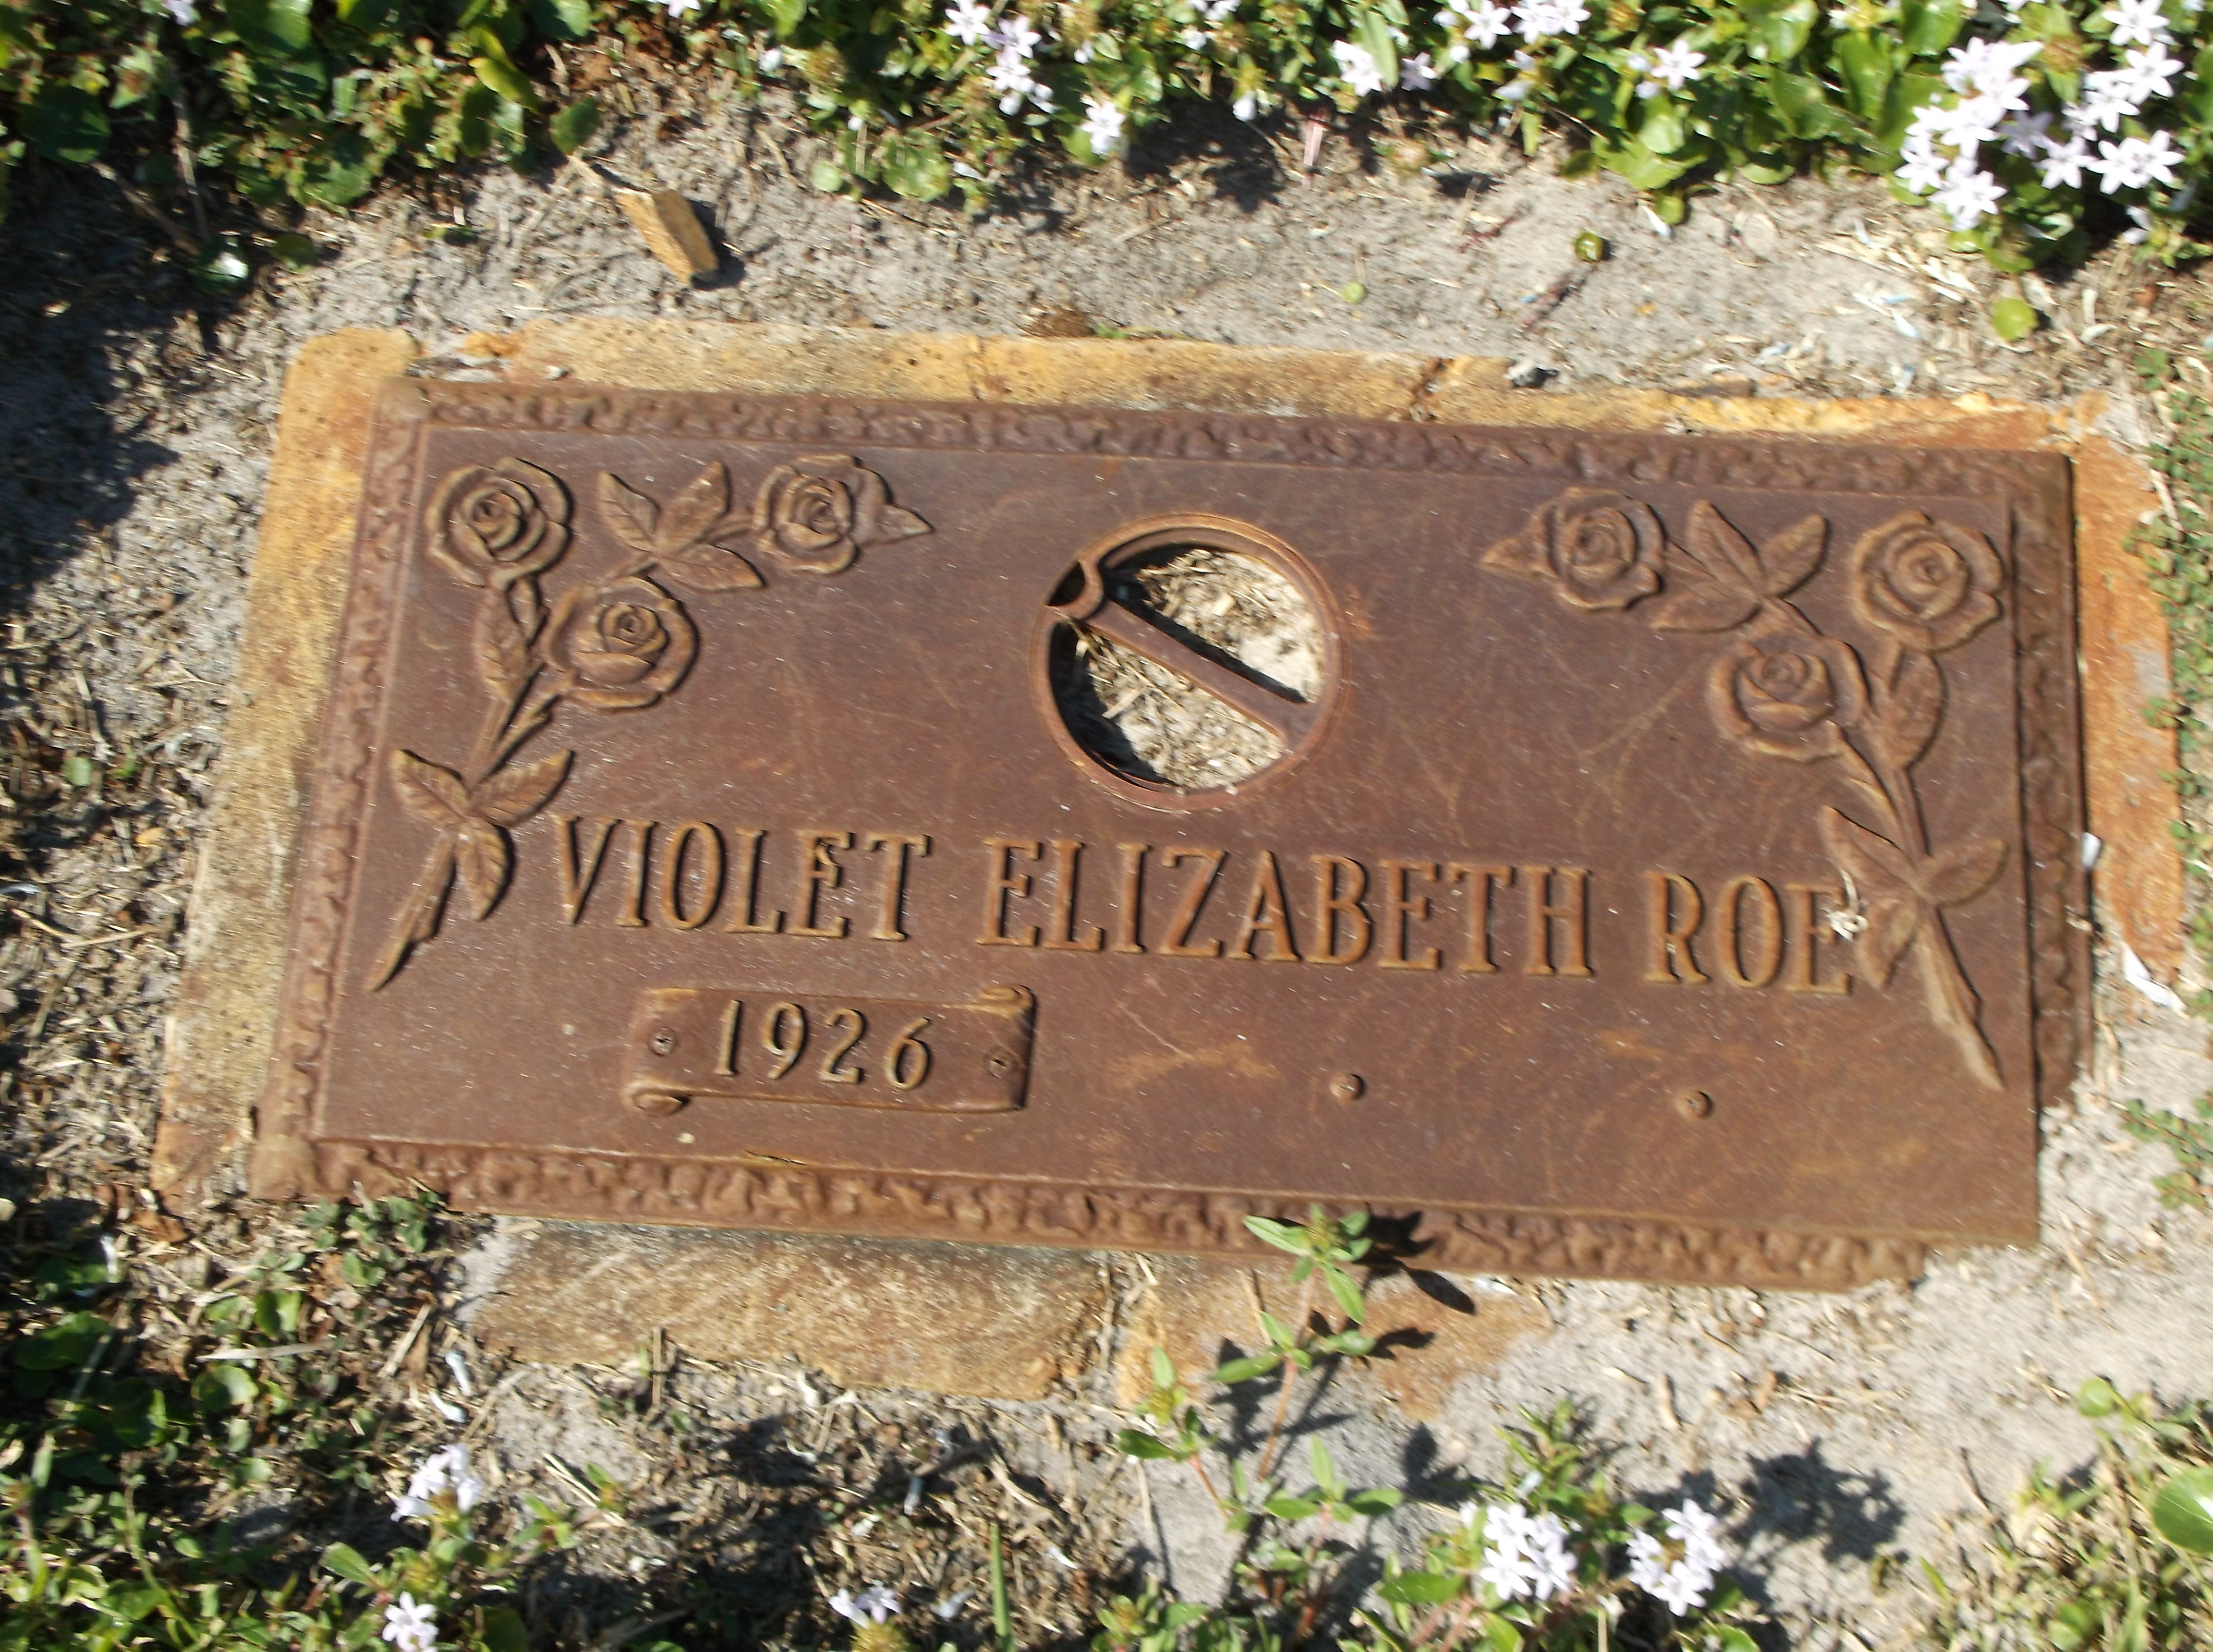 Violet Elizabeth Roe